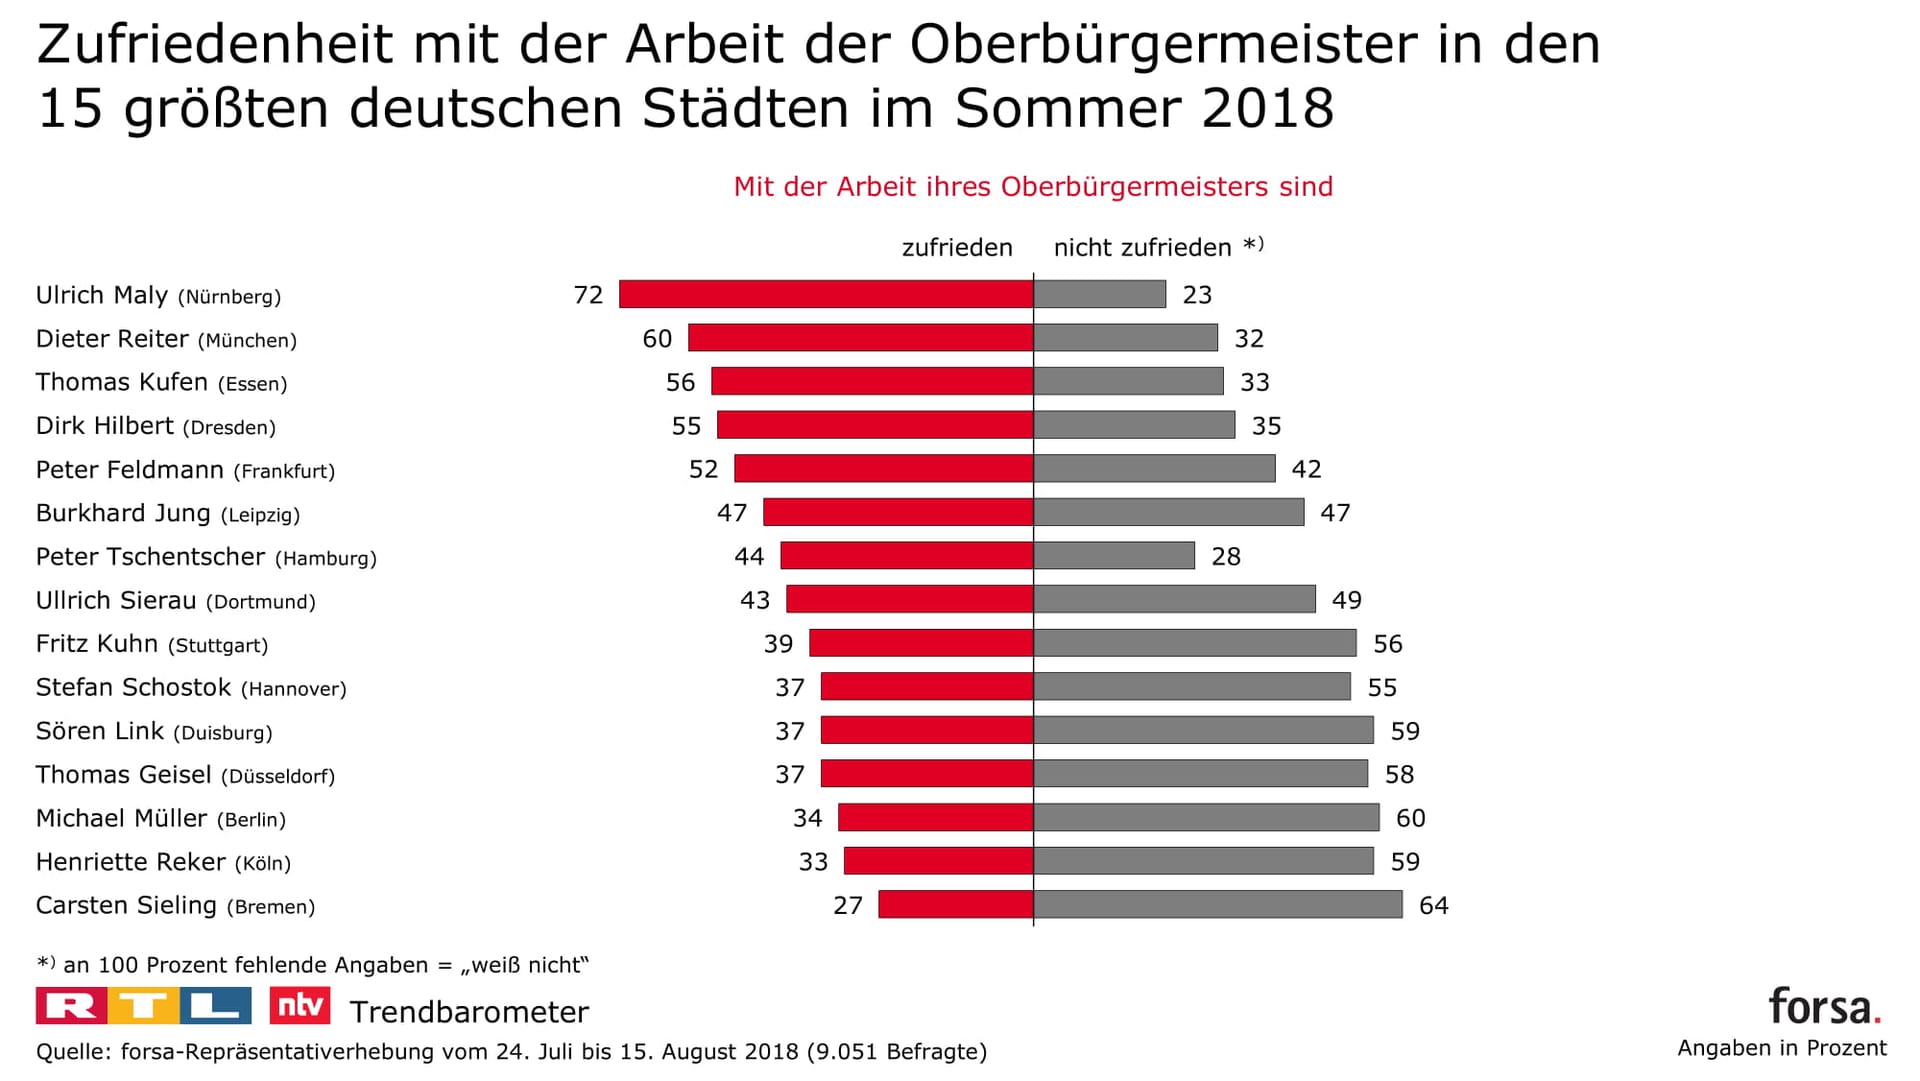 Zufriedenheit mit den Stadtchefs: In Nürnberg ist sie am höchsten, wo Ulrich Maly von der SPD auf die höchste Quote kommt.